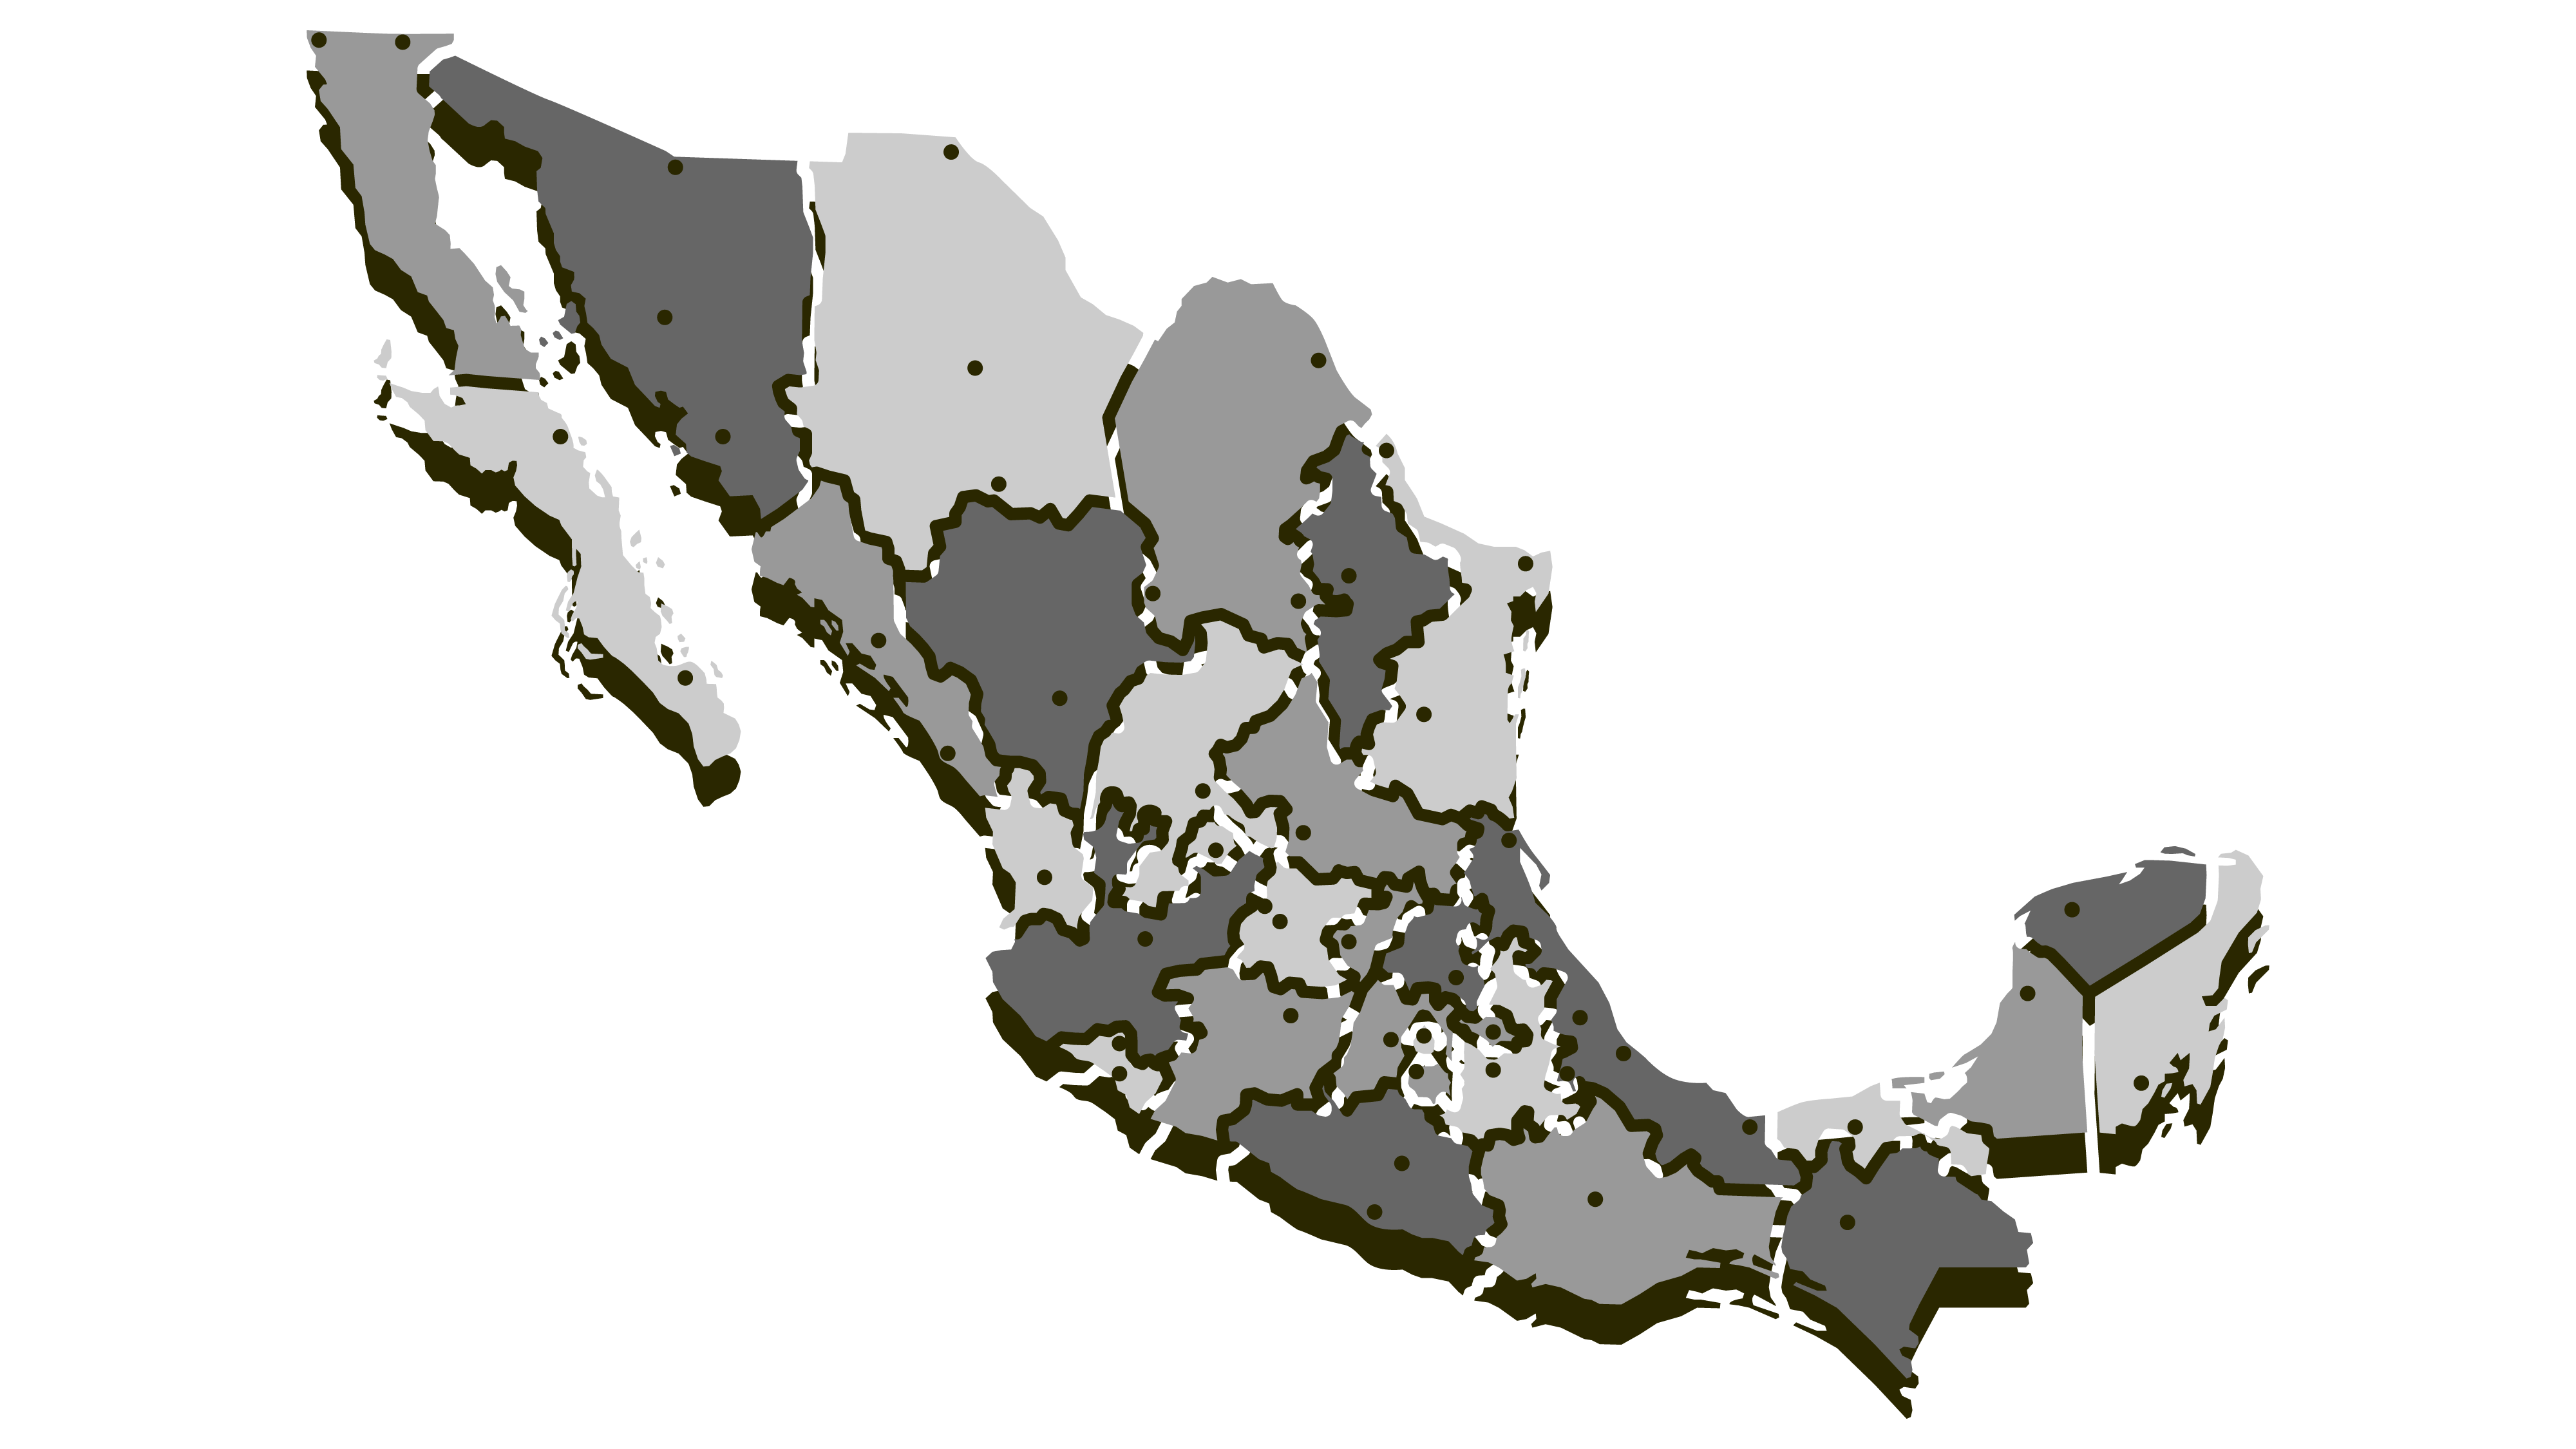 "Mapa de México con ubicaciones destacadas" "Mapa interactivo de México para planificación de viajes" "Navega por México con nuestro mapa interactivo" "Localiza destinos en México en el mapa" "Herramienta de mapas para explorar México"